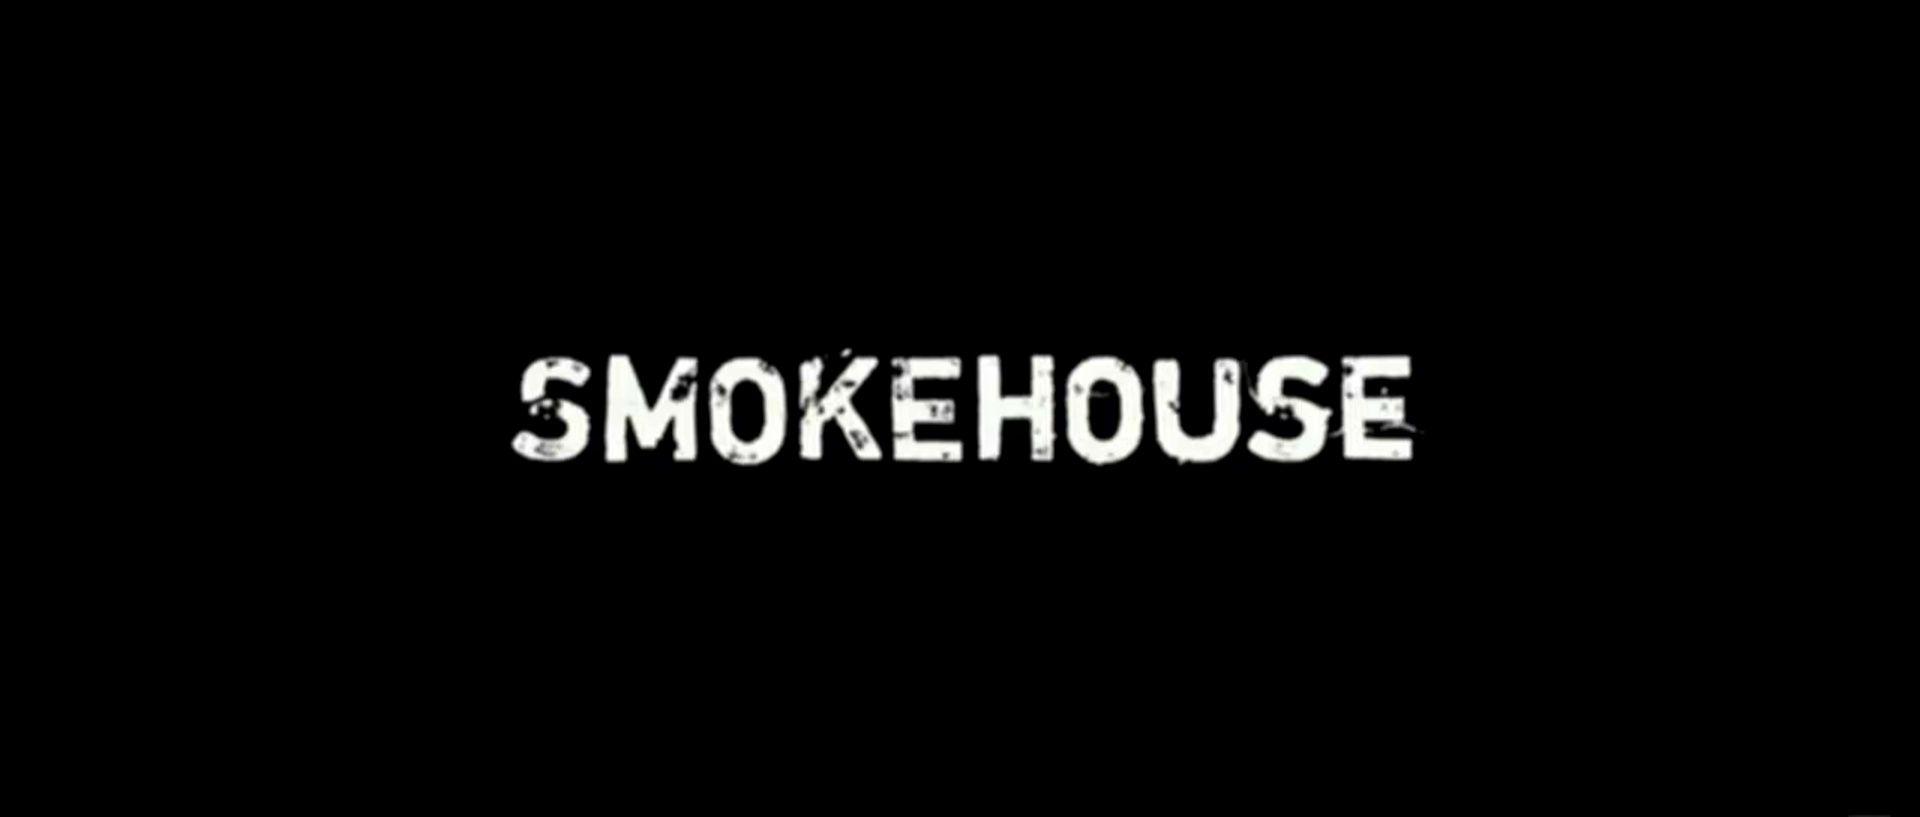 Smokehouse Logo - Smokehouse Picture